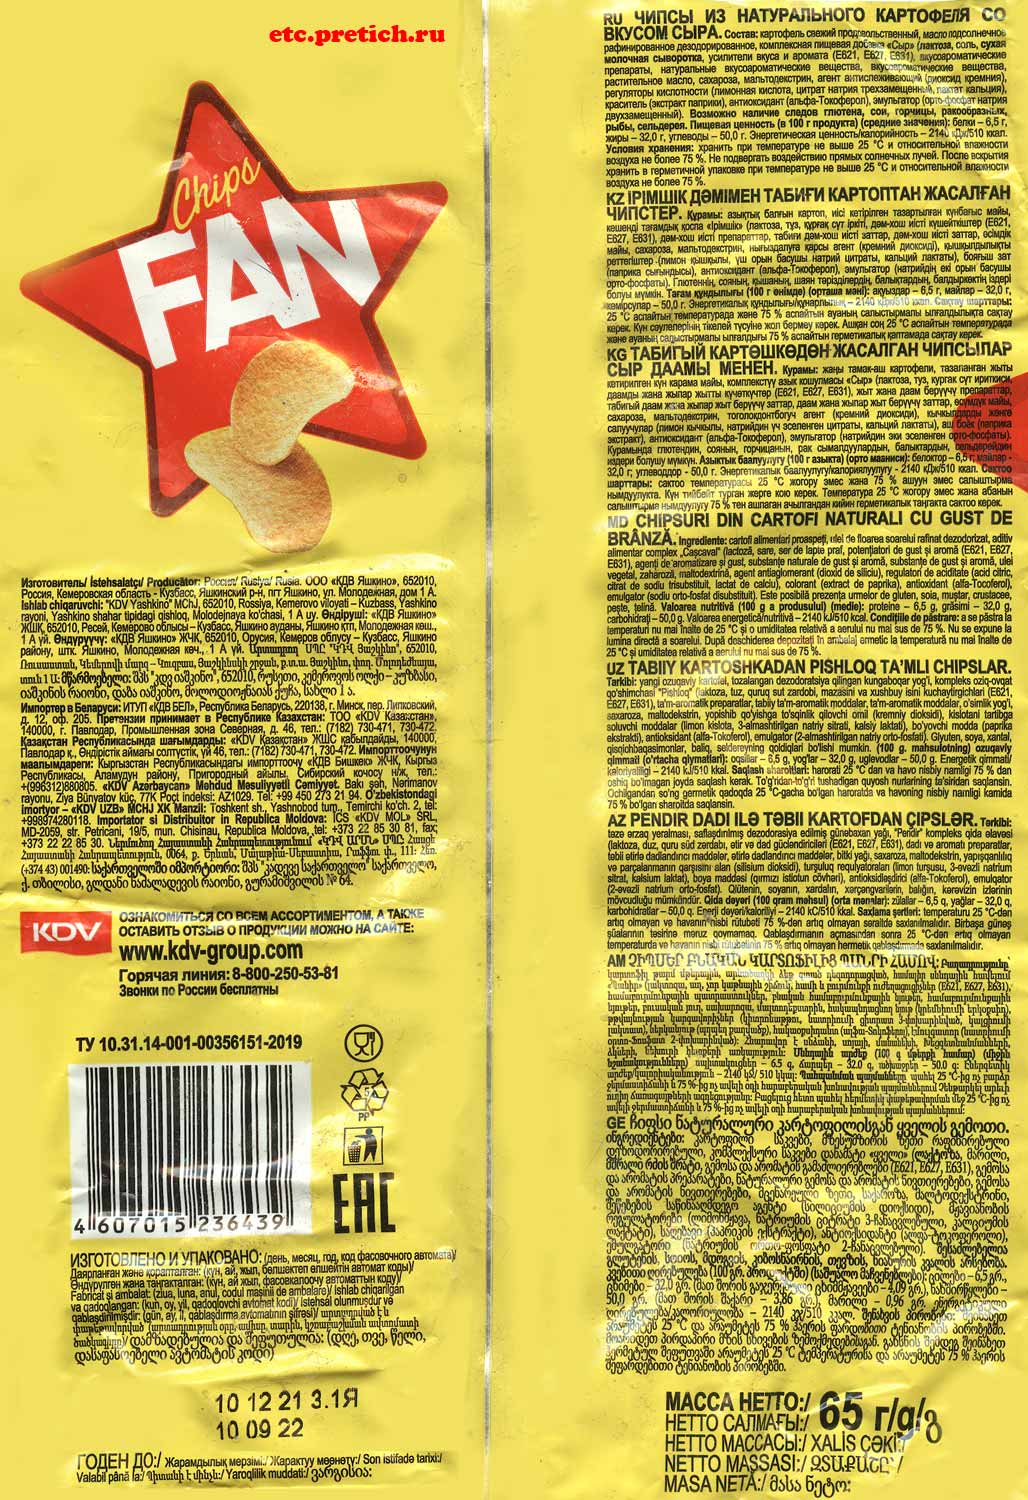 Chips FAN состав чипсов со вкусом сыра, что такое Яшкино, много химии